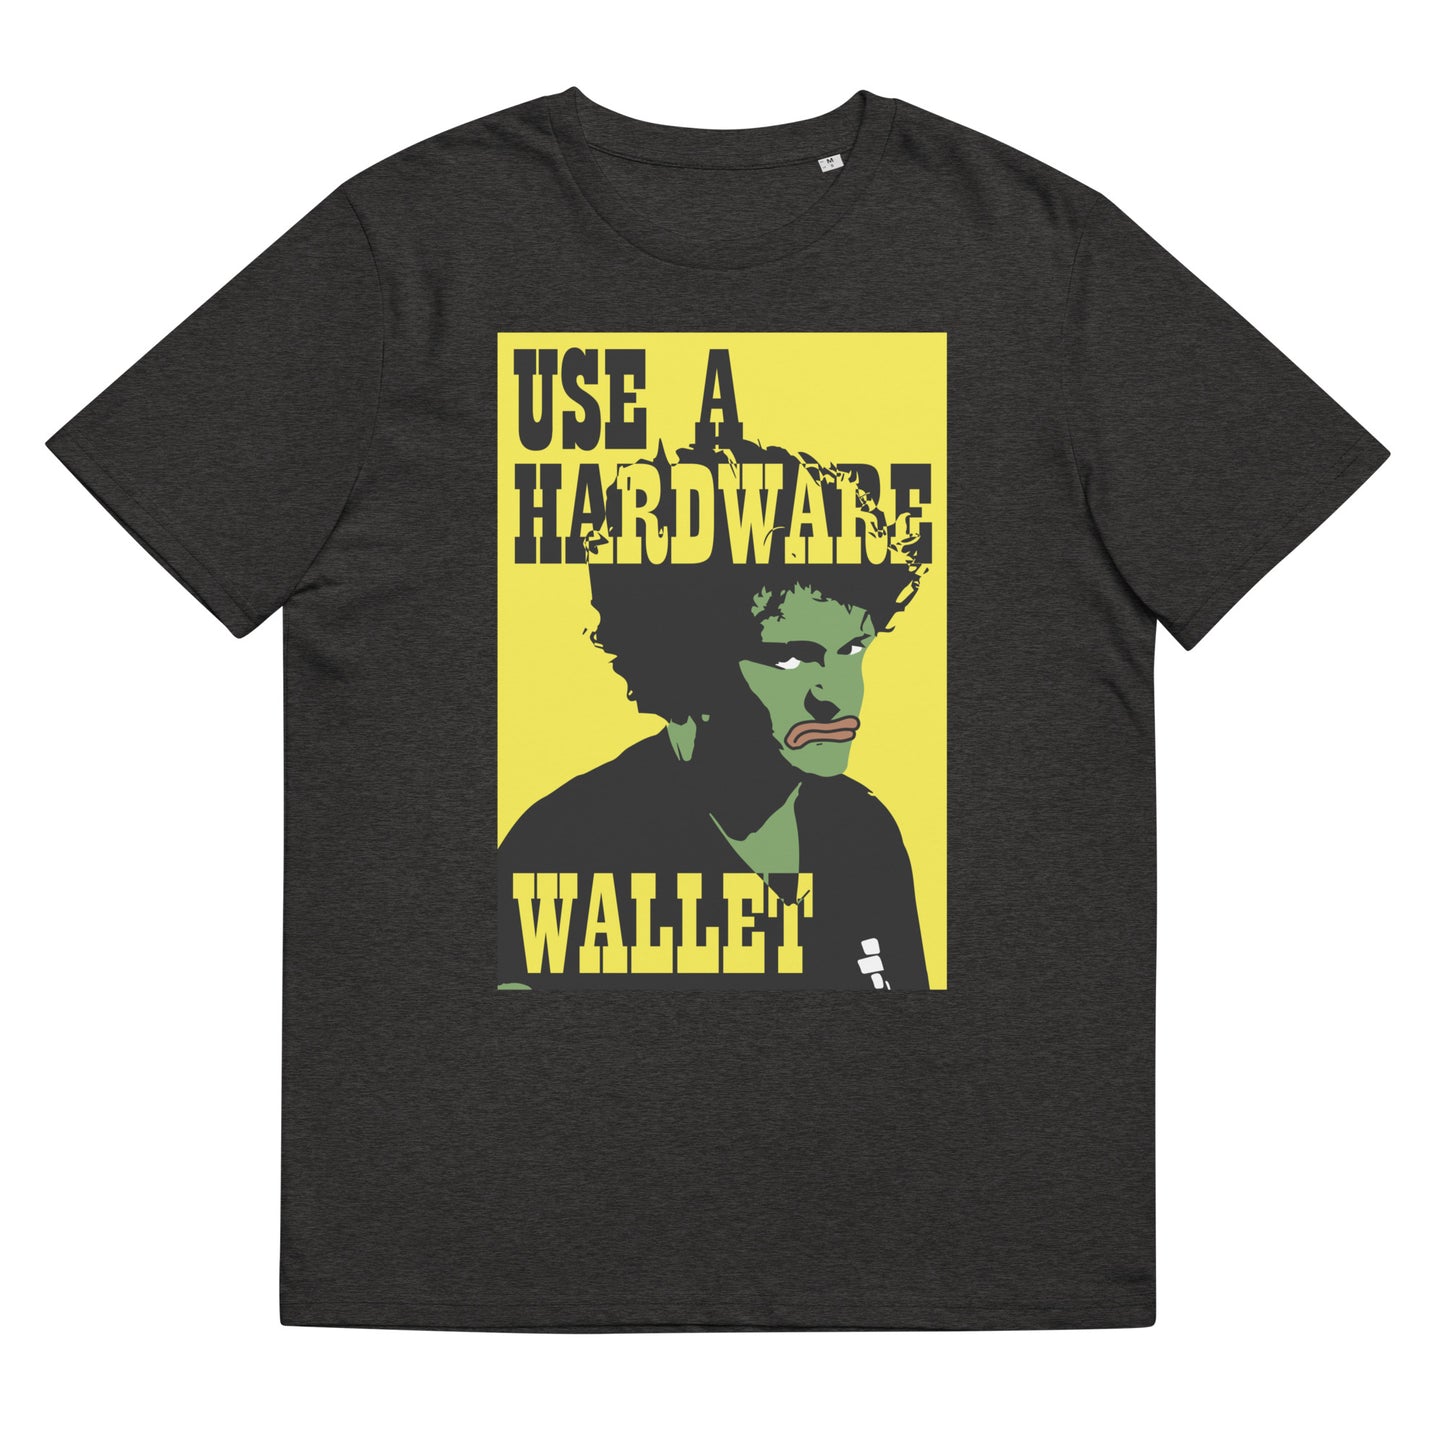 use-hardware-wallet-t-shirt-dark-heather